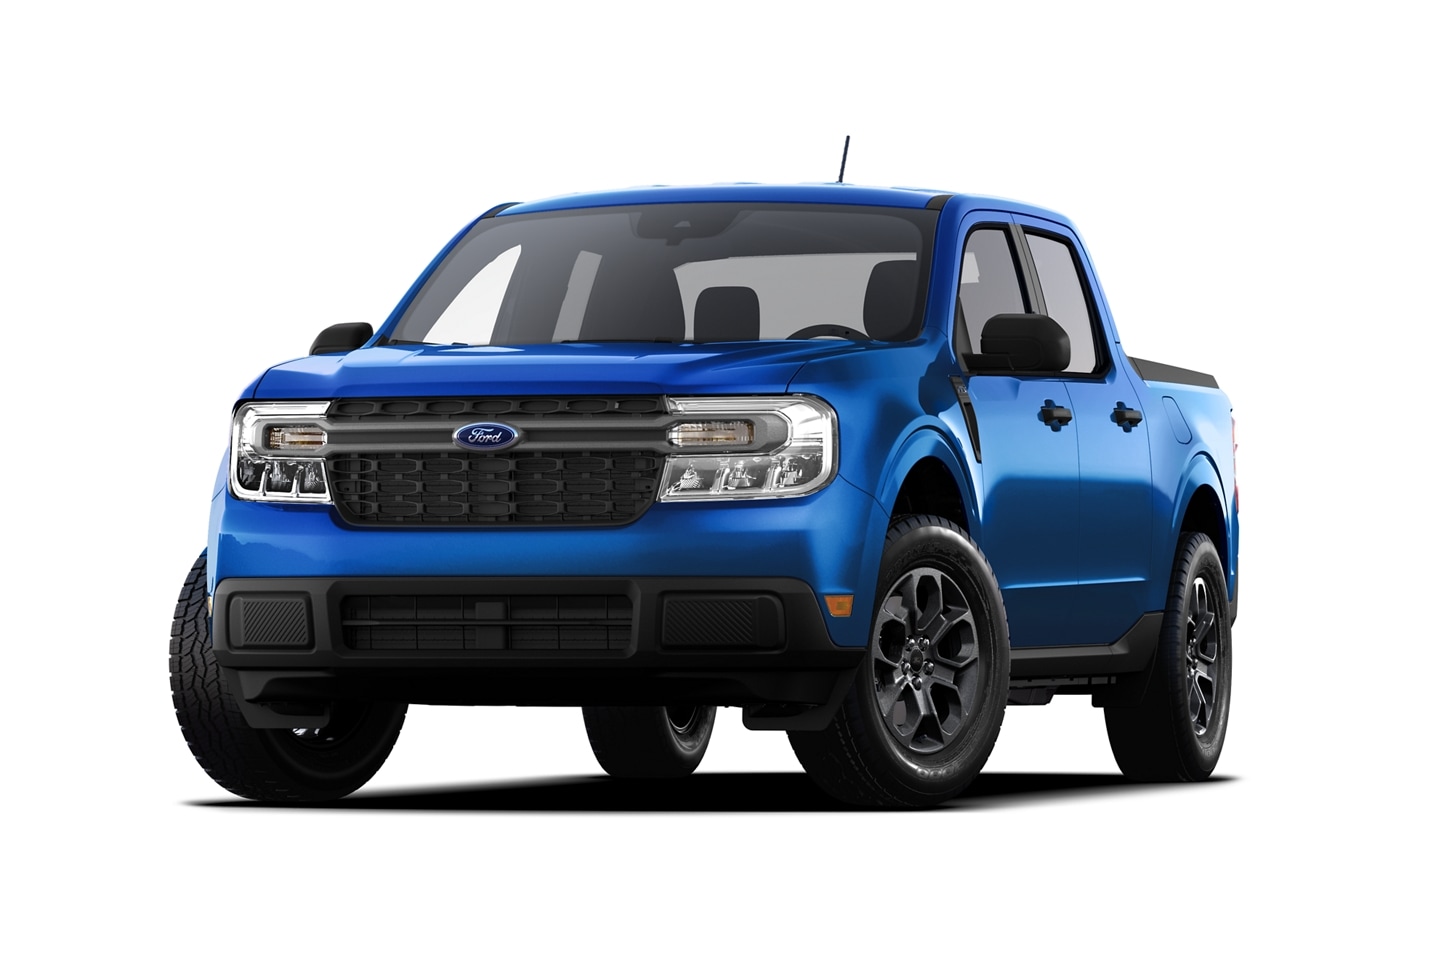 2023 Ford Maverick® XLT model in Velocity Blue